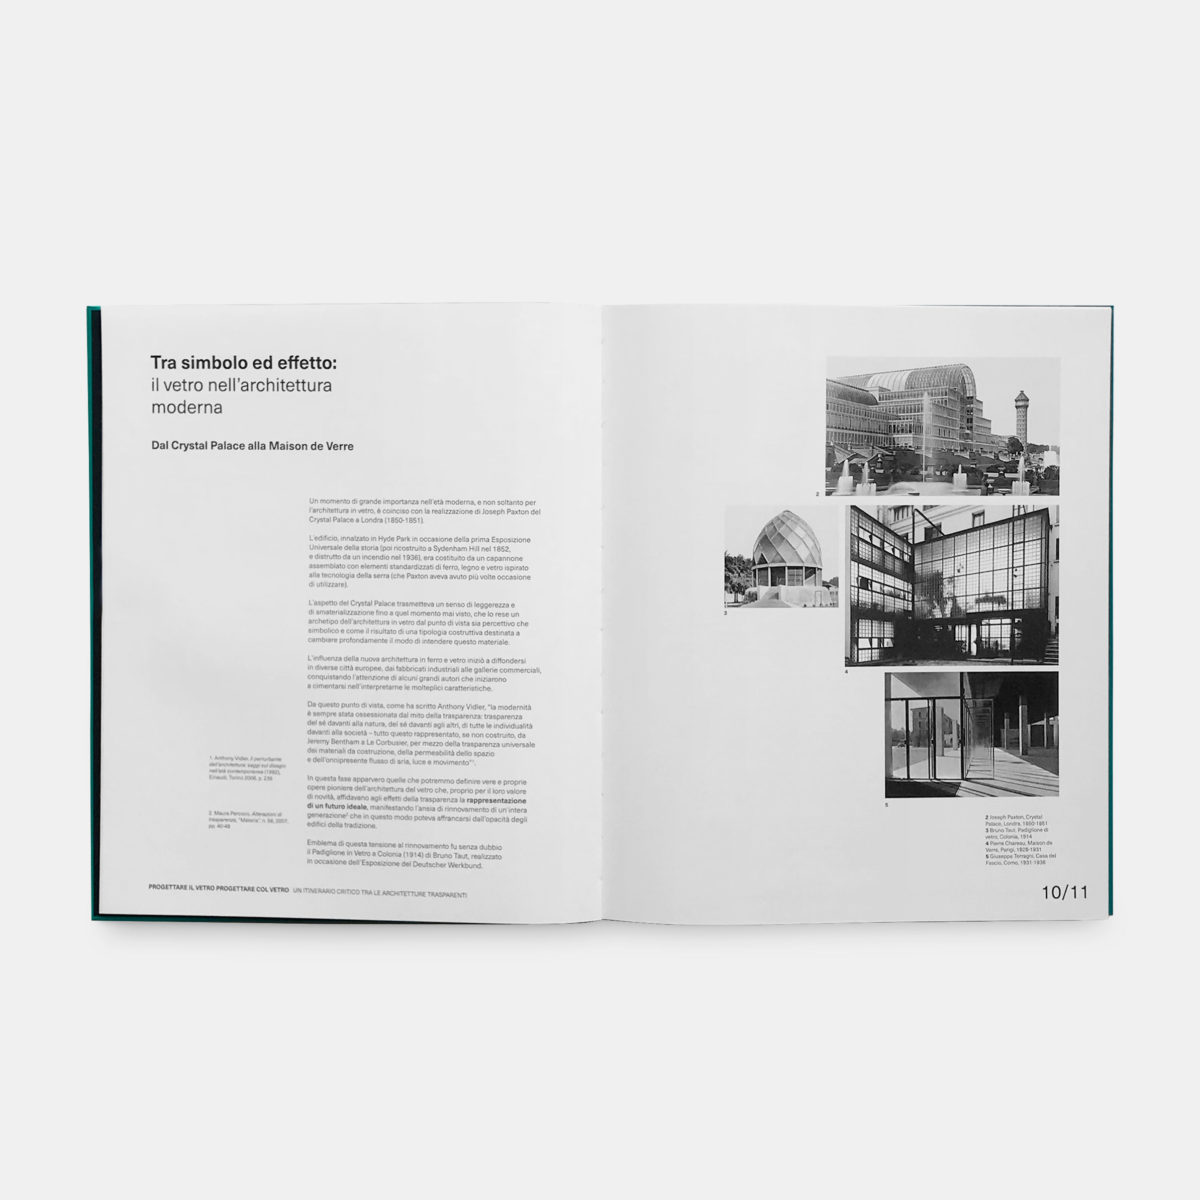 Un catalogo sulle architetture trasparenti. Guardare al passato per progettare con il vetro nel futuro